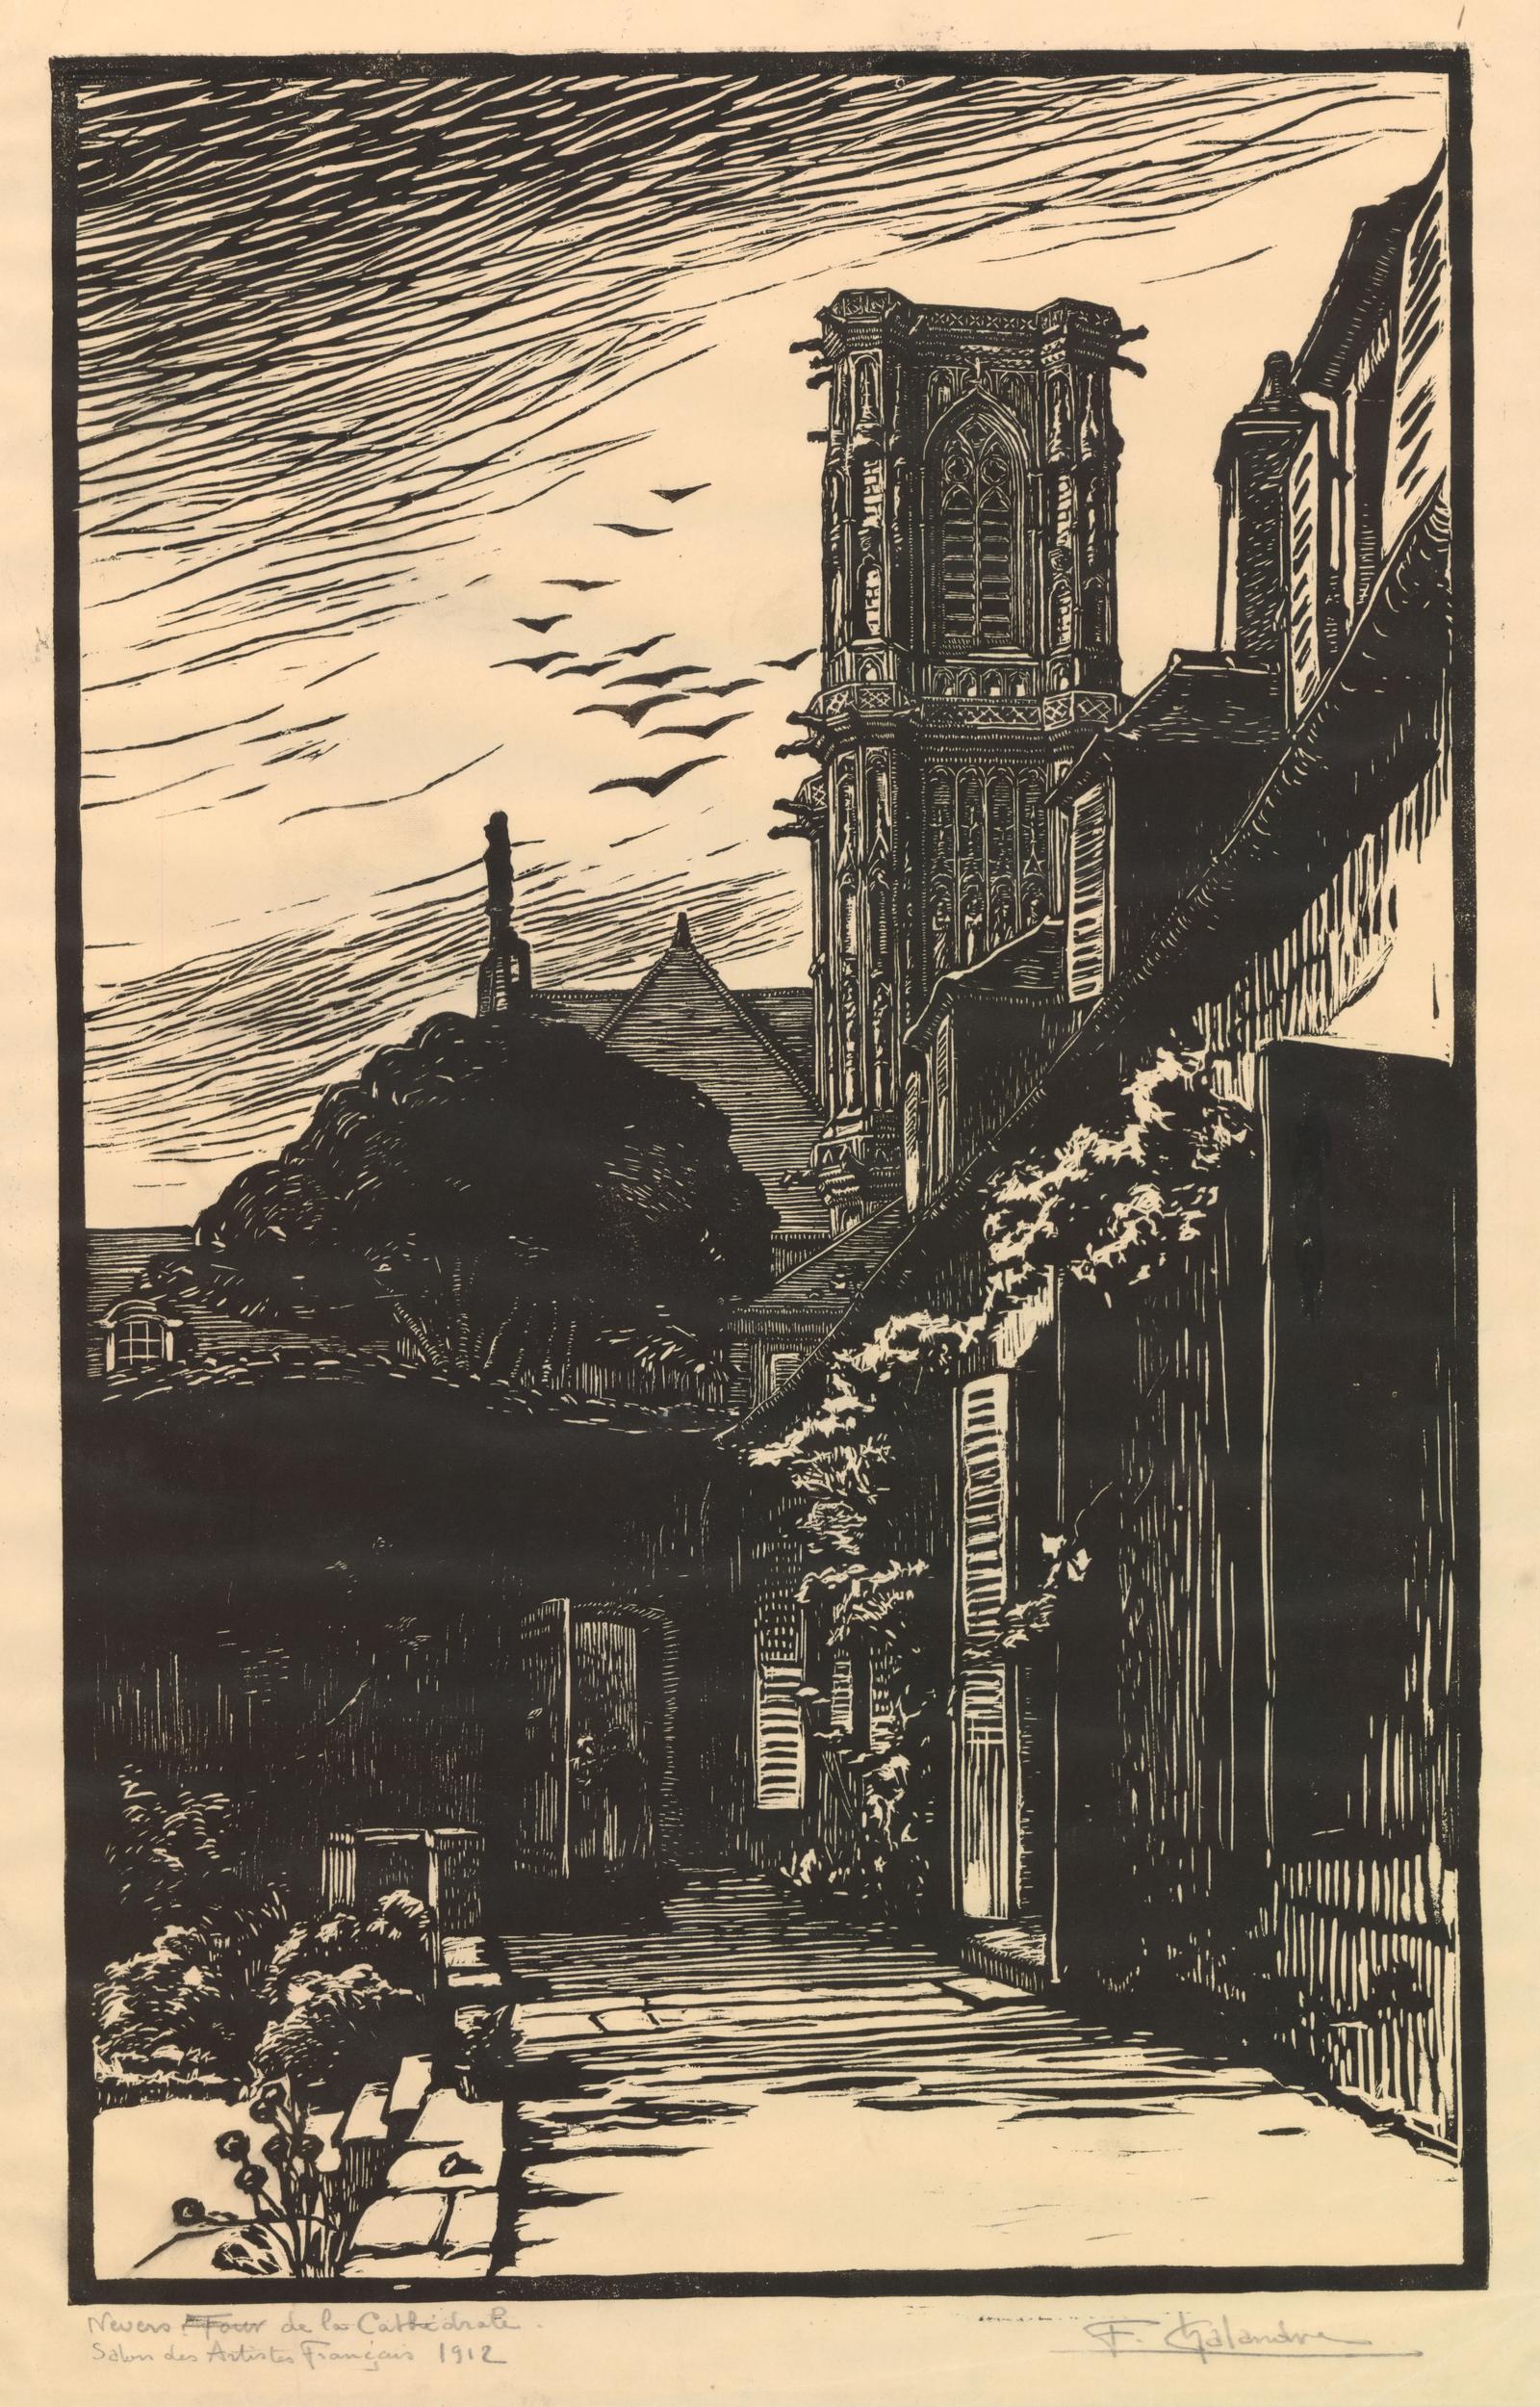 Nevers, tour de la cathédrale (Nevers Cathedral tower) (1912)